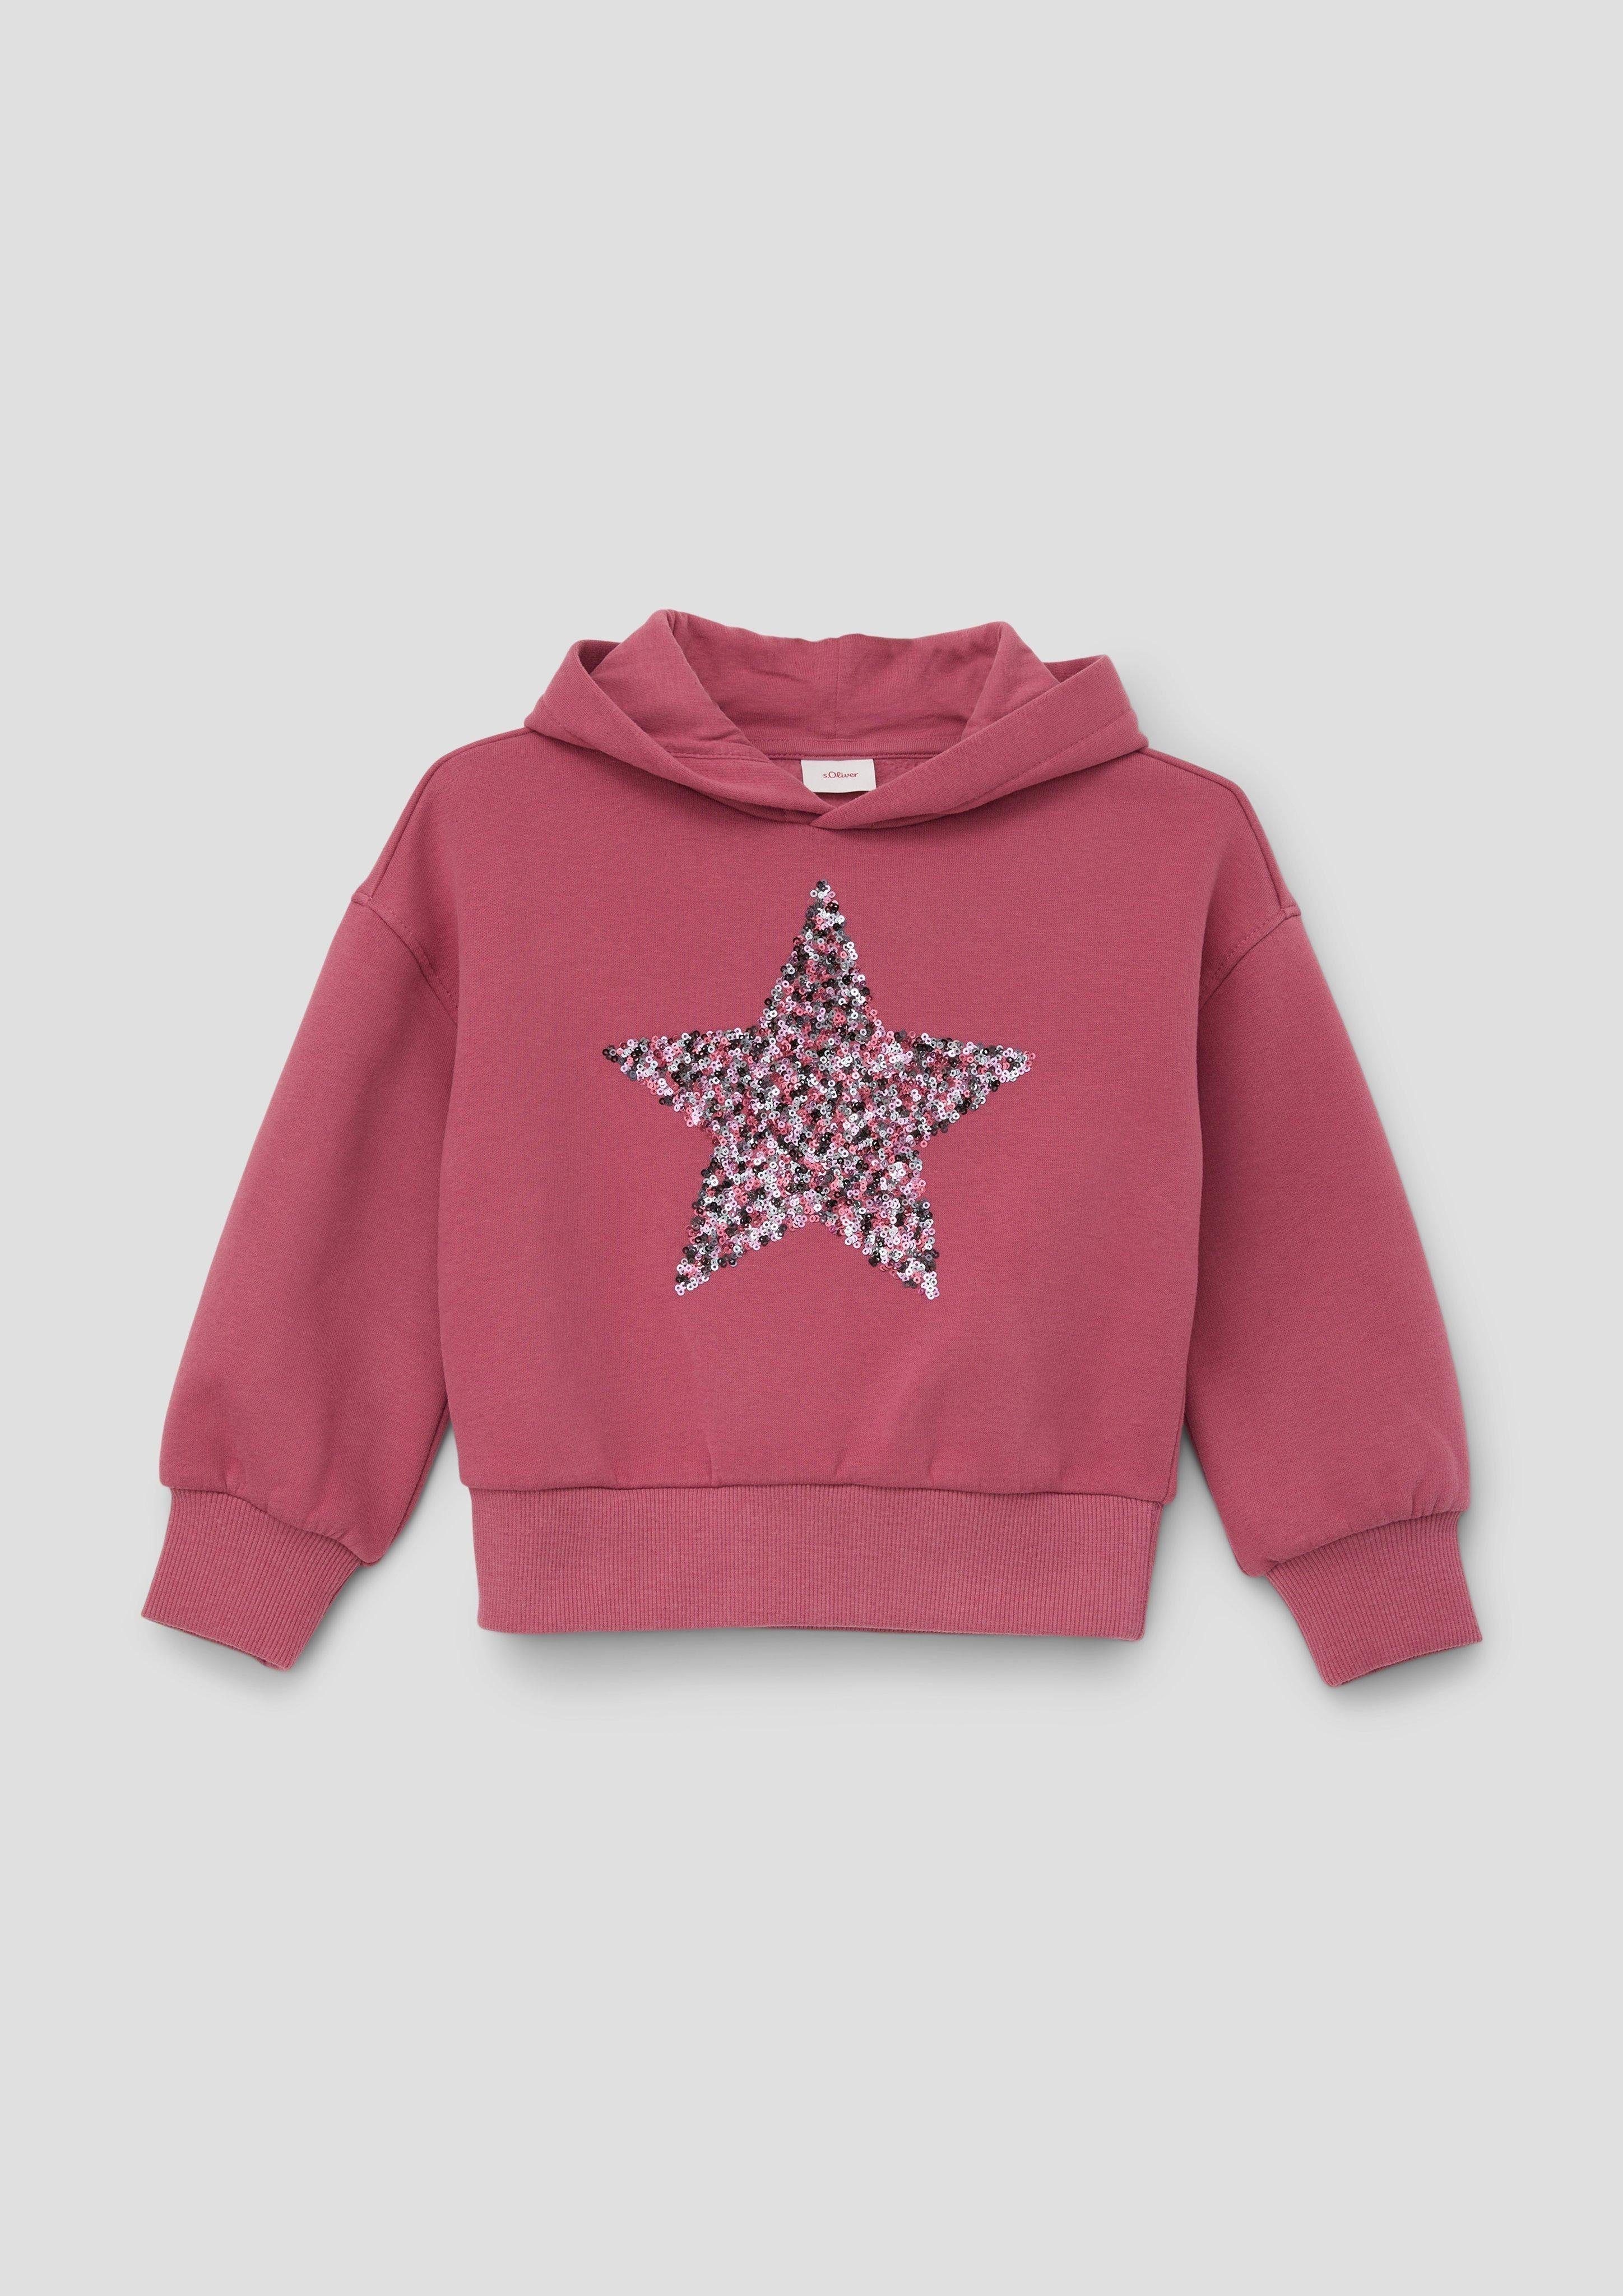 s.Oliver Sweatshirt Sweatshirt mit Pailletten-Stern Pailletten pink